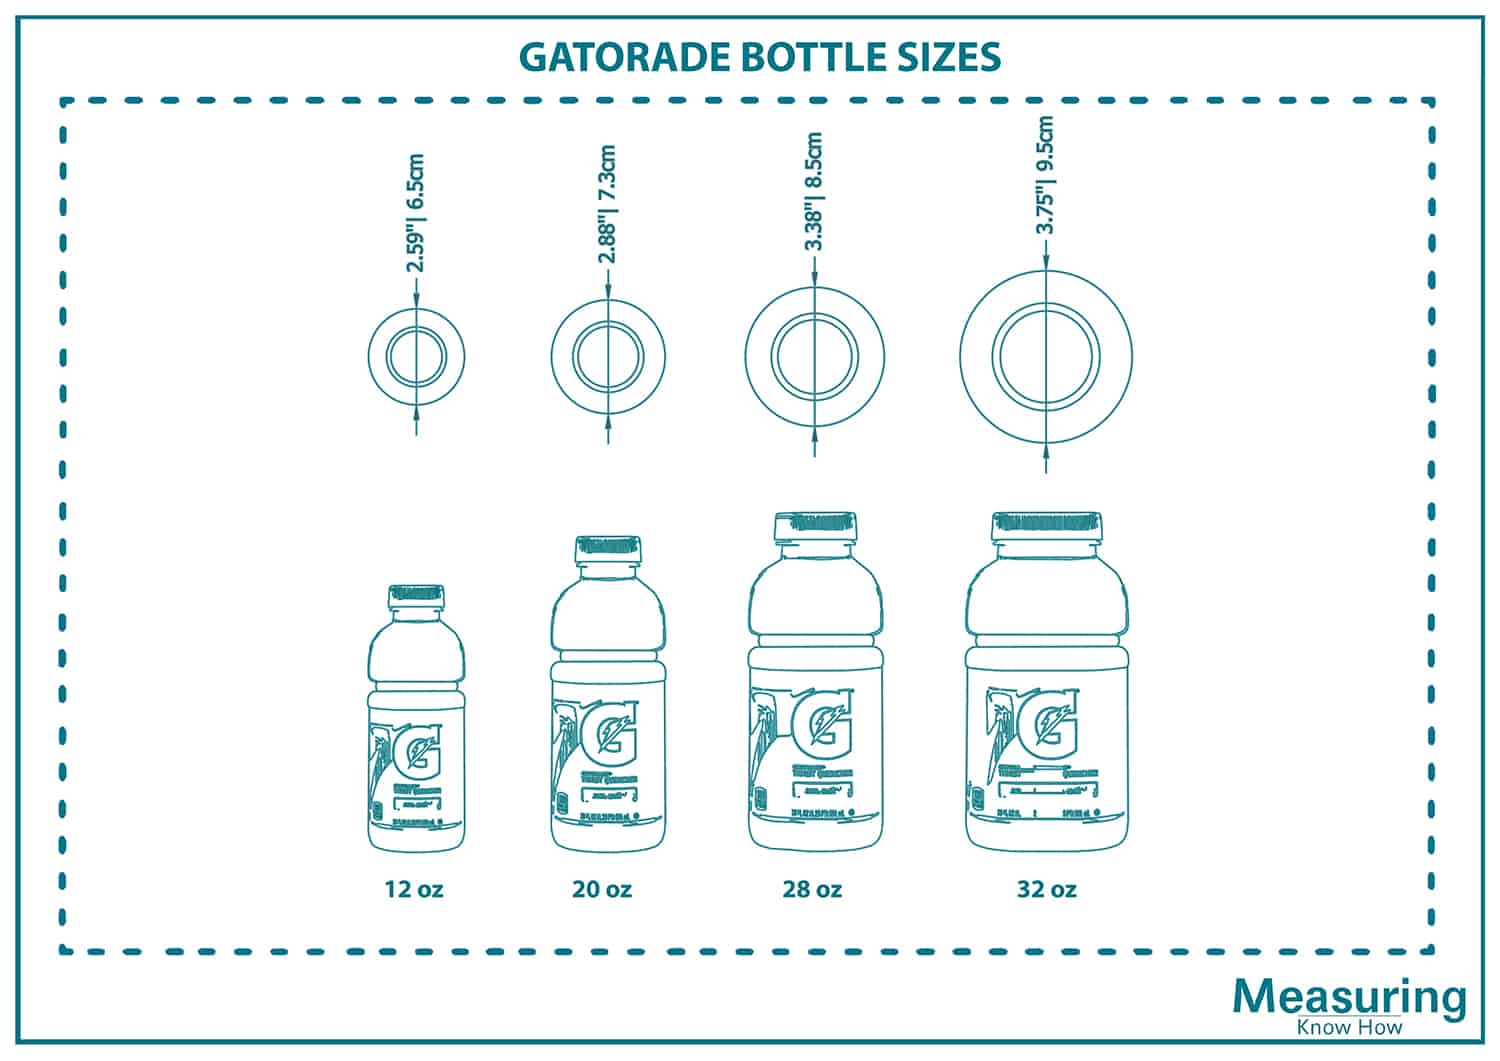 Gatorade bottle sizes